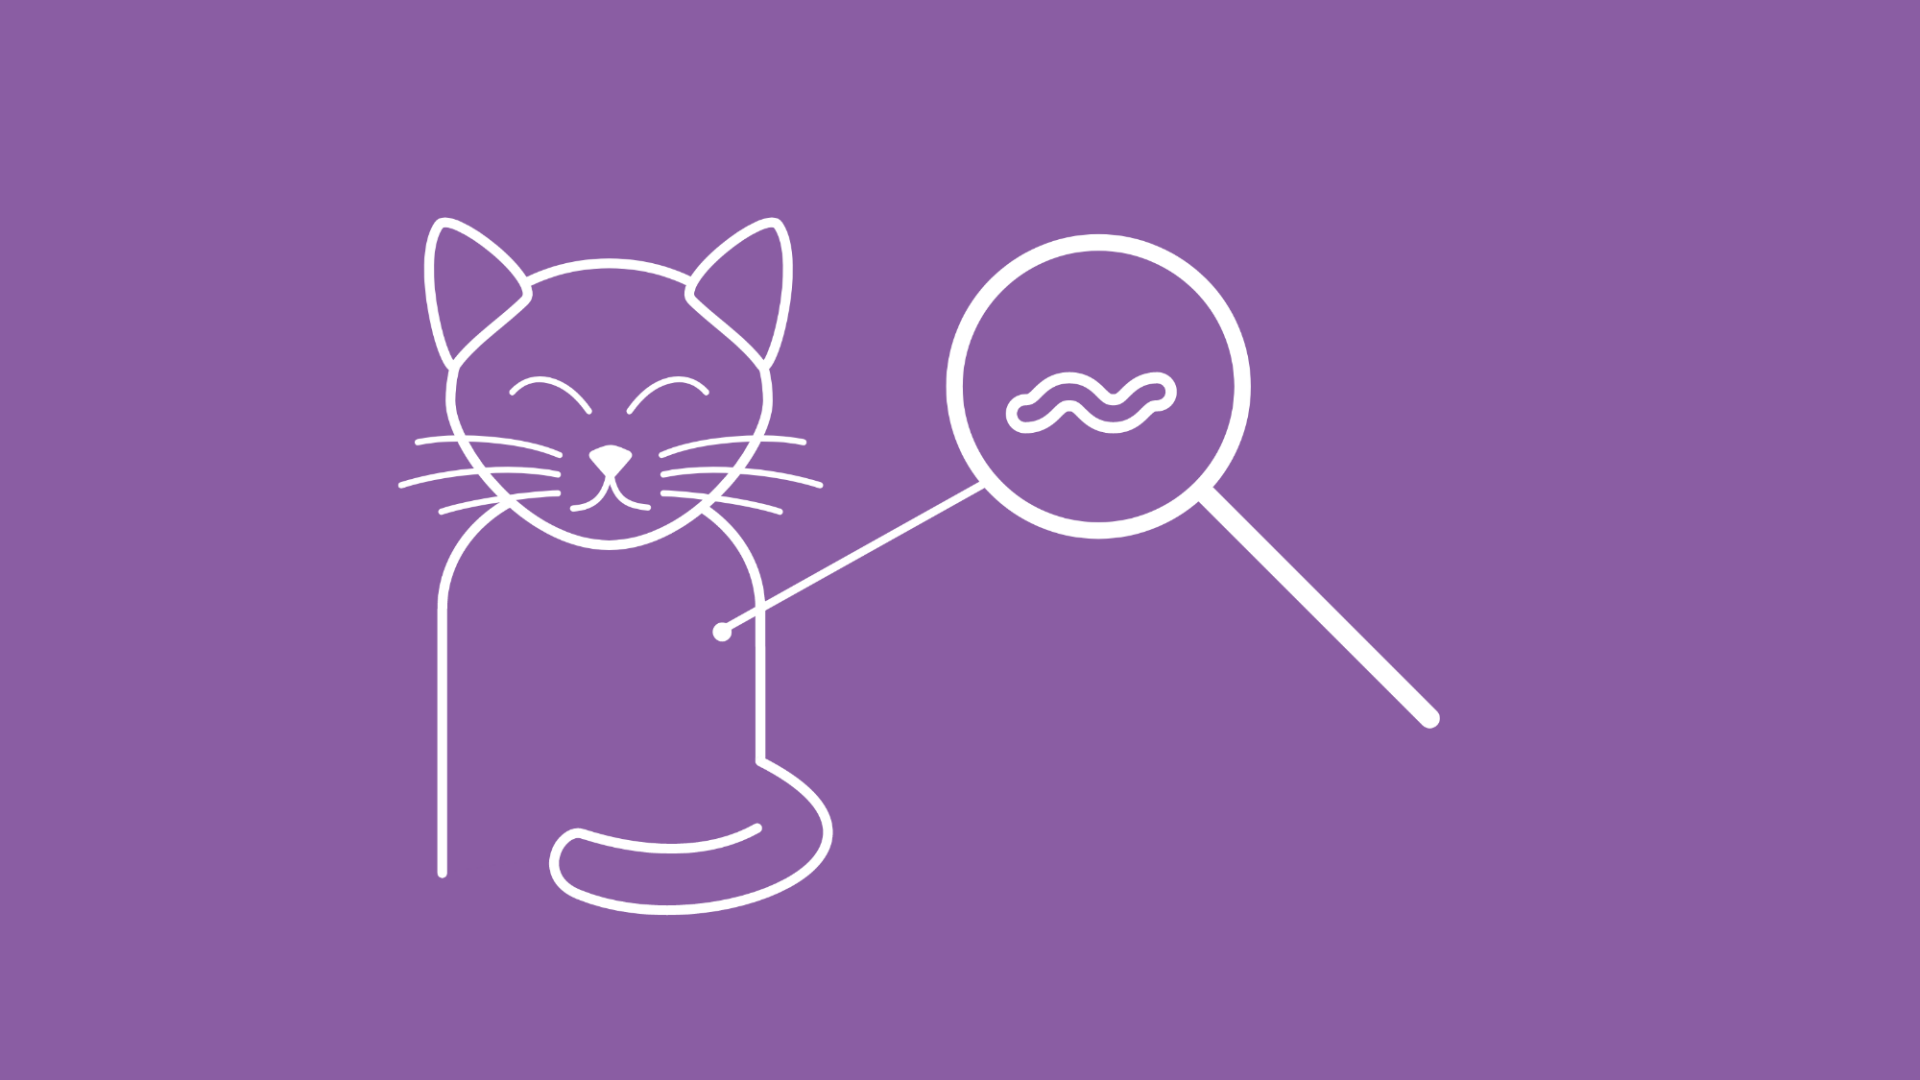 Die Grafik zeigt im Icon-Stil eine Katze, auf deren Fell eine Lupe gehalten wird. Durch die Lupe ist ein Wurm erkennbar. 